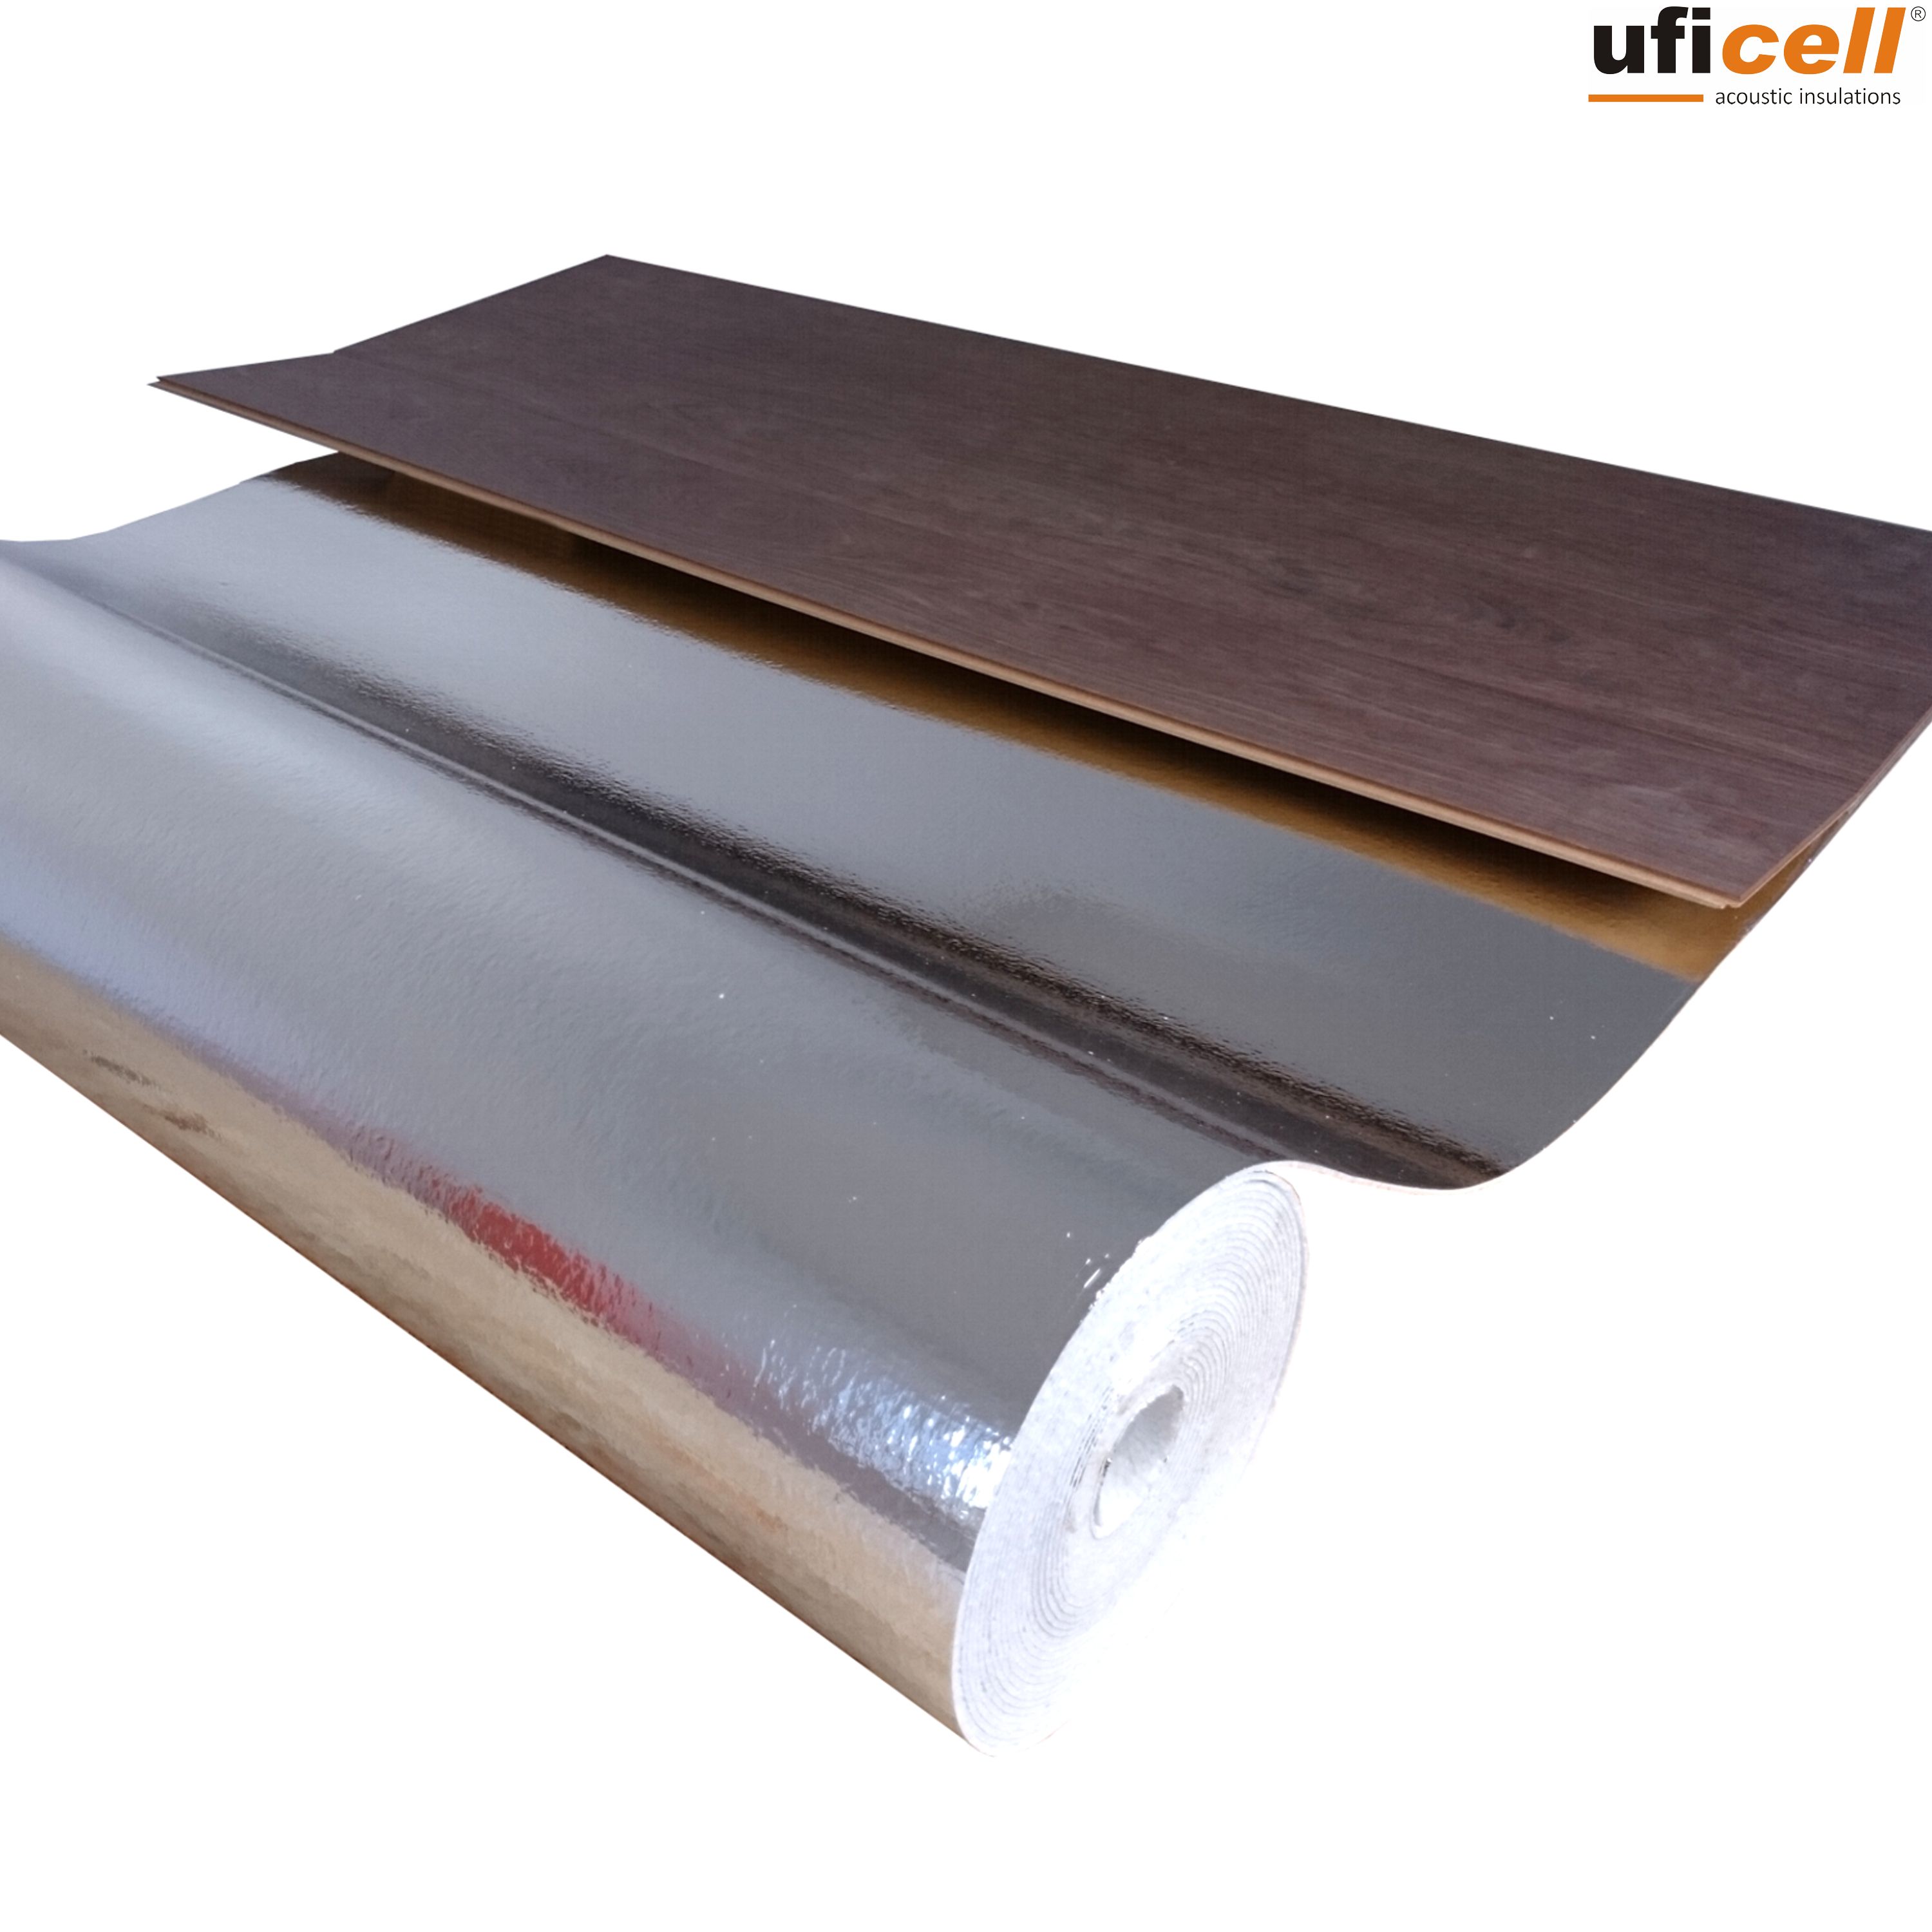 uficell® ALU Trittschalldämmung mit Alu-Kaschierung perfekt für  Fußbodenheizung, 2 mm stark 